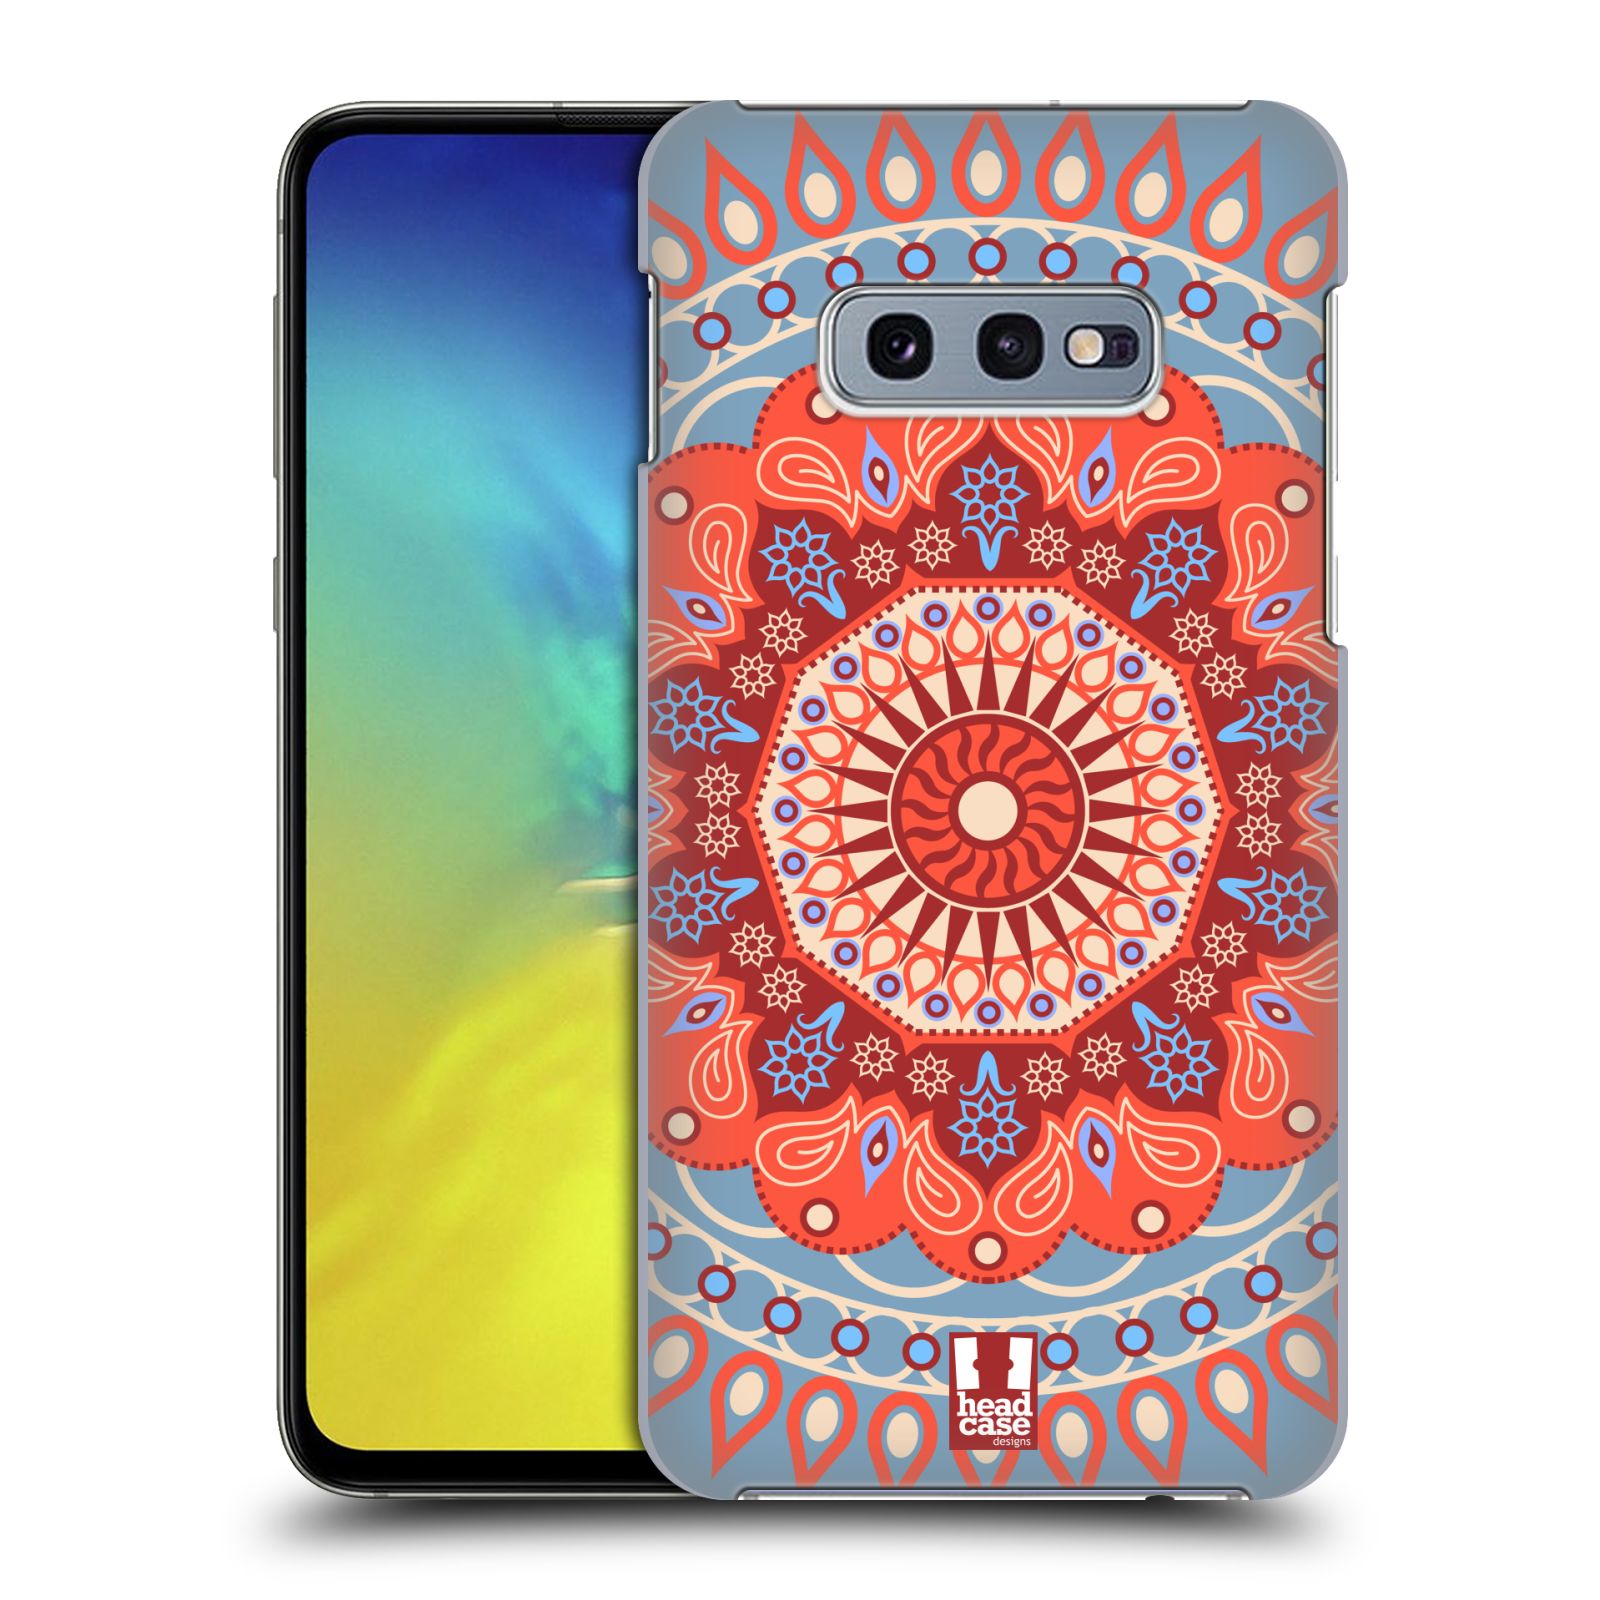 Pouzdro na mobil Samsung Galaxy S10e - HEAD CASE - vzor Indie Mandala slunce barevný motiv ČERVENÁ A MODRÁ